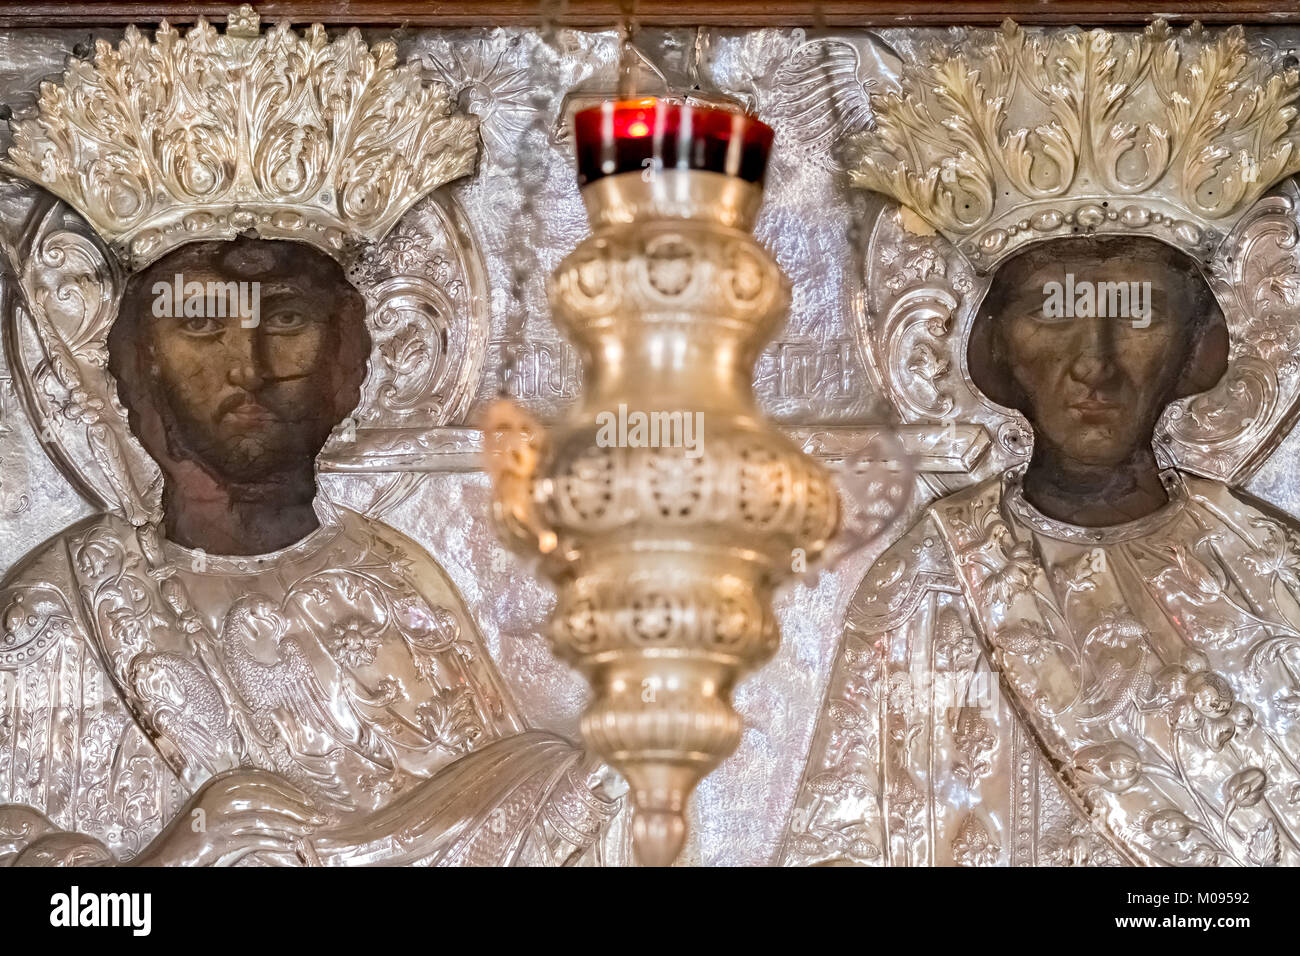 Chiesa con immagini di santi, argento figure e candelabri d'argento, monastica della Chiesa Ortodossa Greca a due navate chiesa, il Monumento Nazionale di Creta in Foto Stock